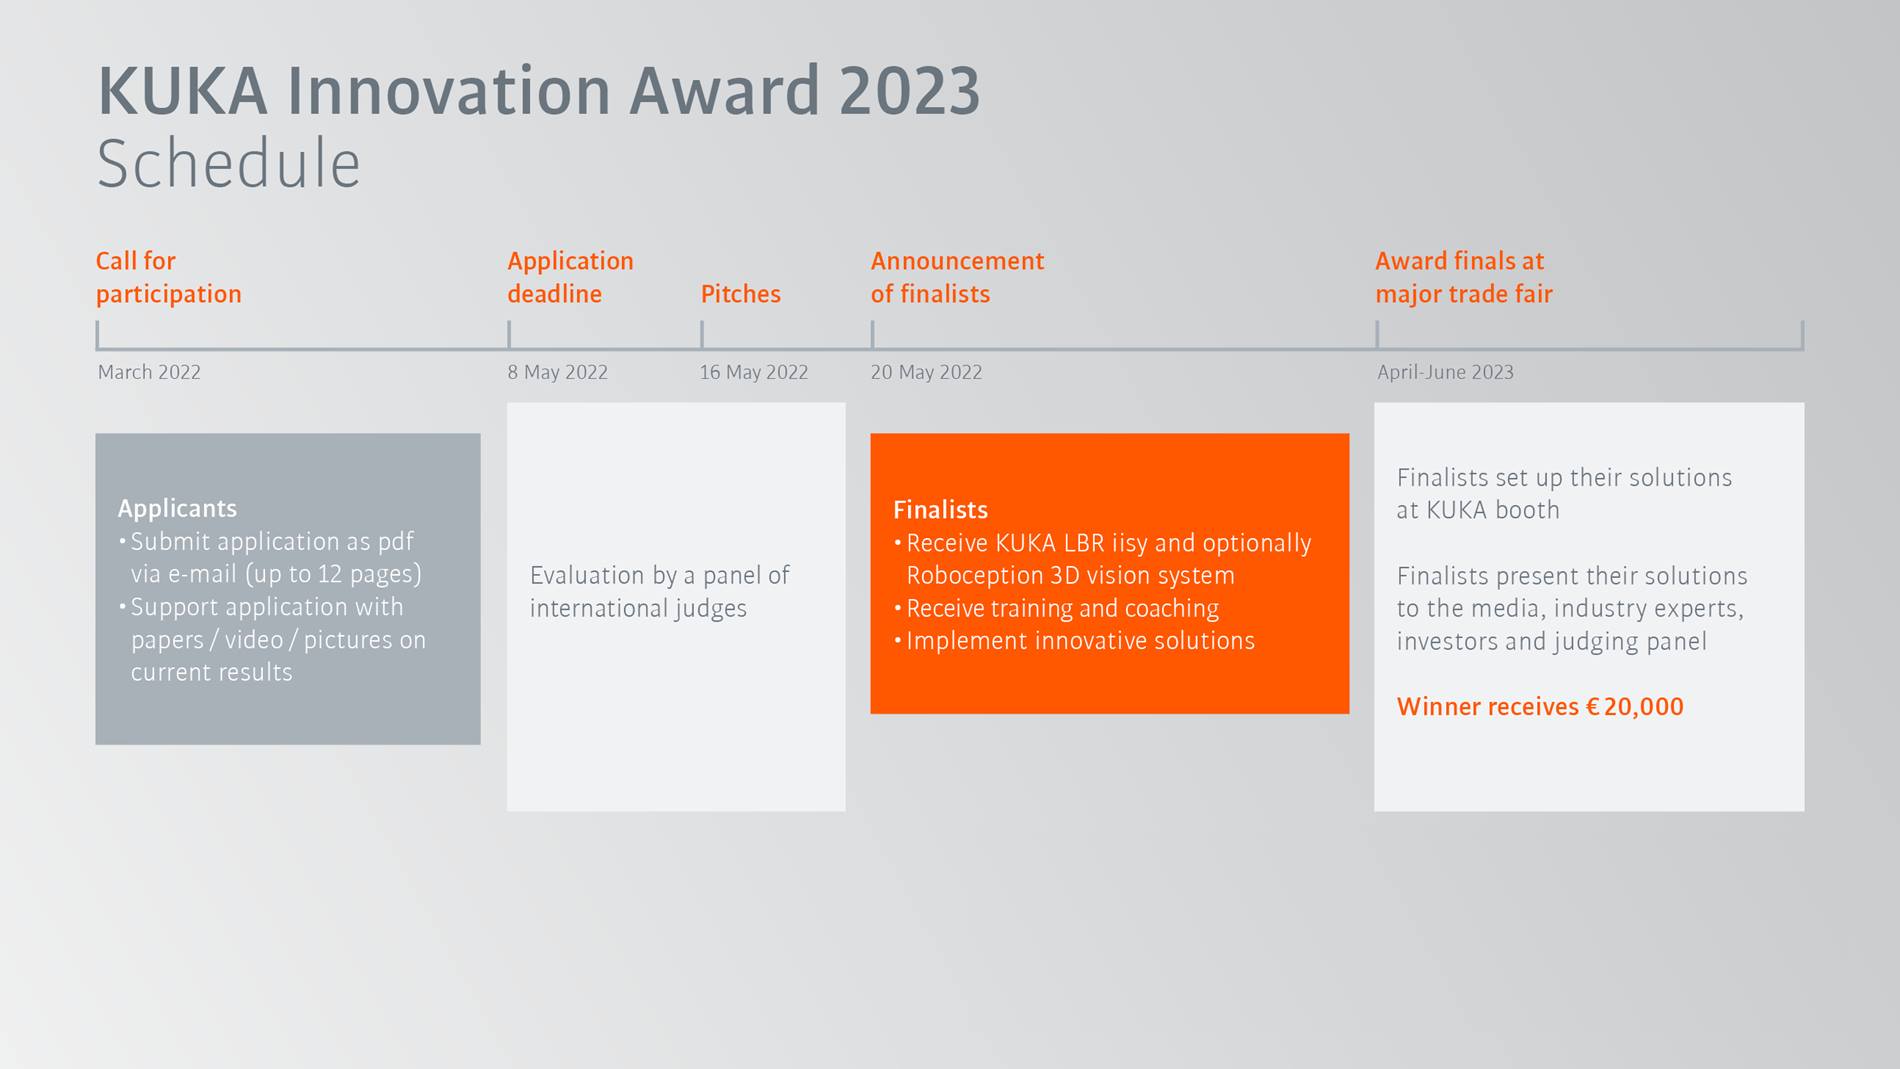 KUKA Innovation Award 2023 Timeline